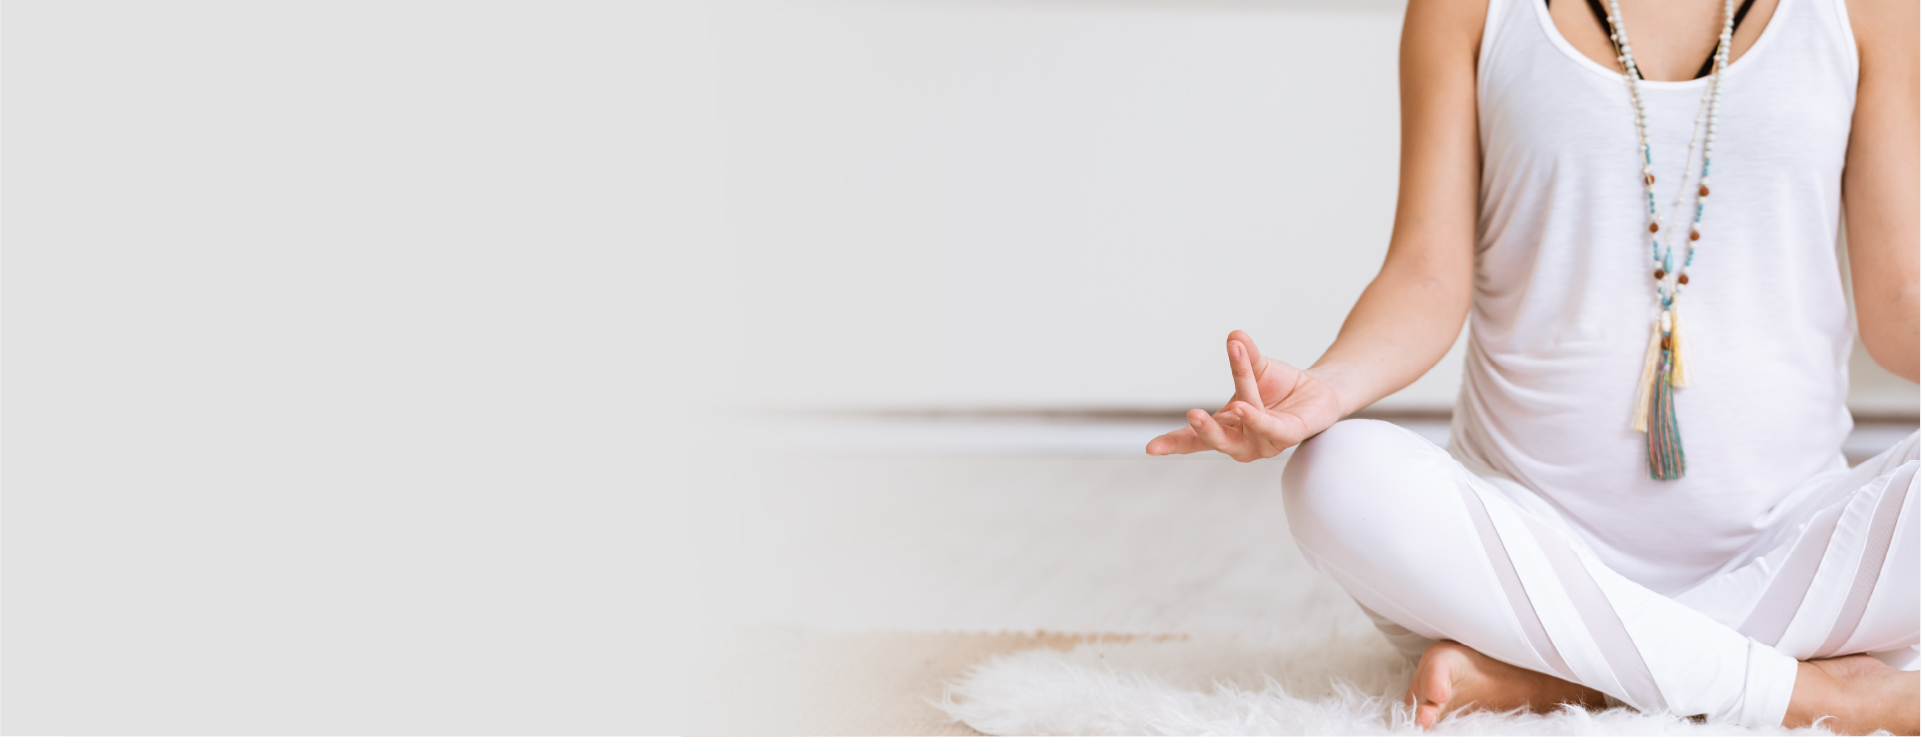 Yoga and fertility treatment